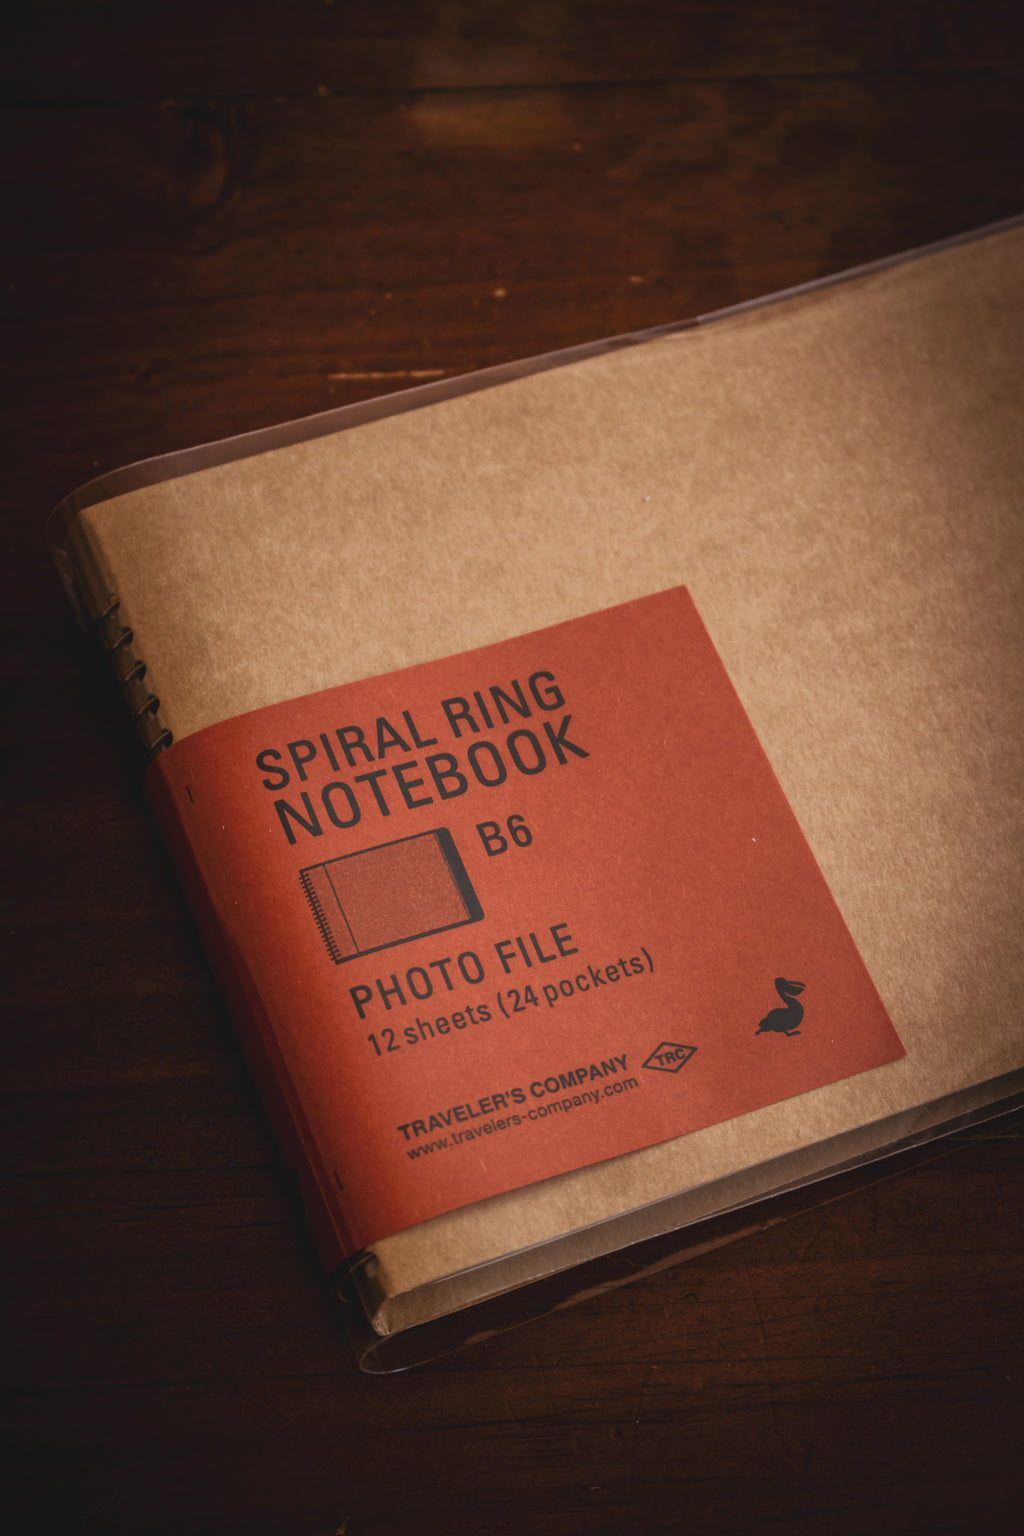 TRAVELER'S Spiral Ring Notebook - B6 Photo File